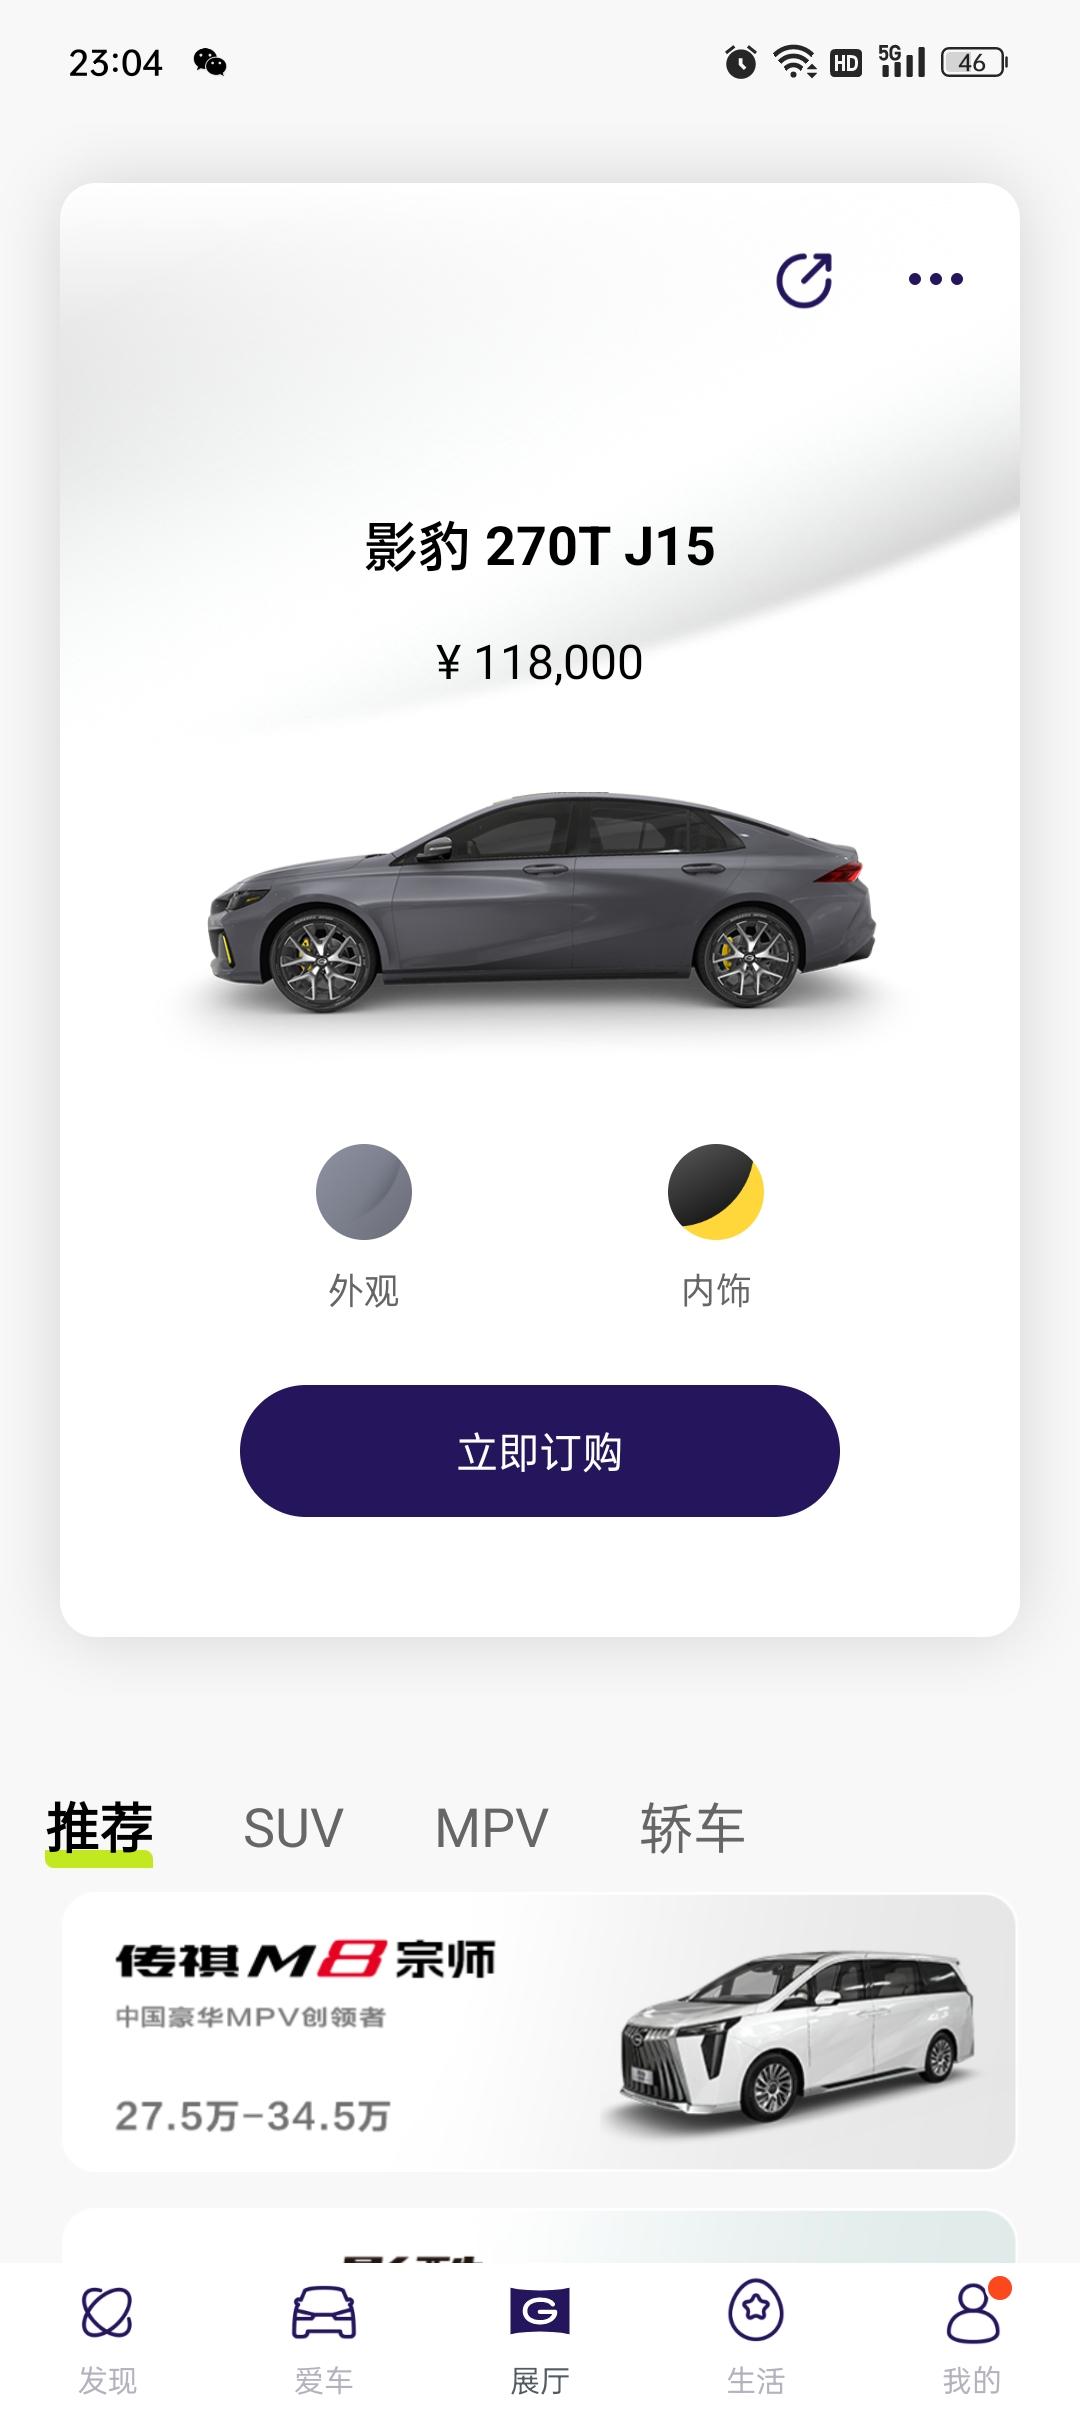 广汽传祺影豹 豹友，在4s店定车了，但是想在广汽传祺app看车子的进度，需要在app上面再定一次车吗，会不会跟